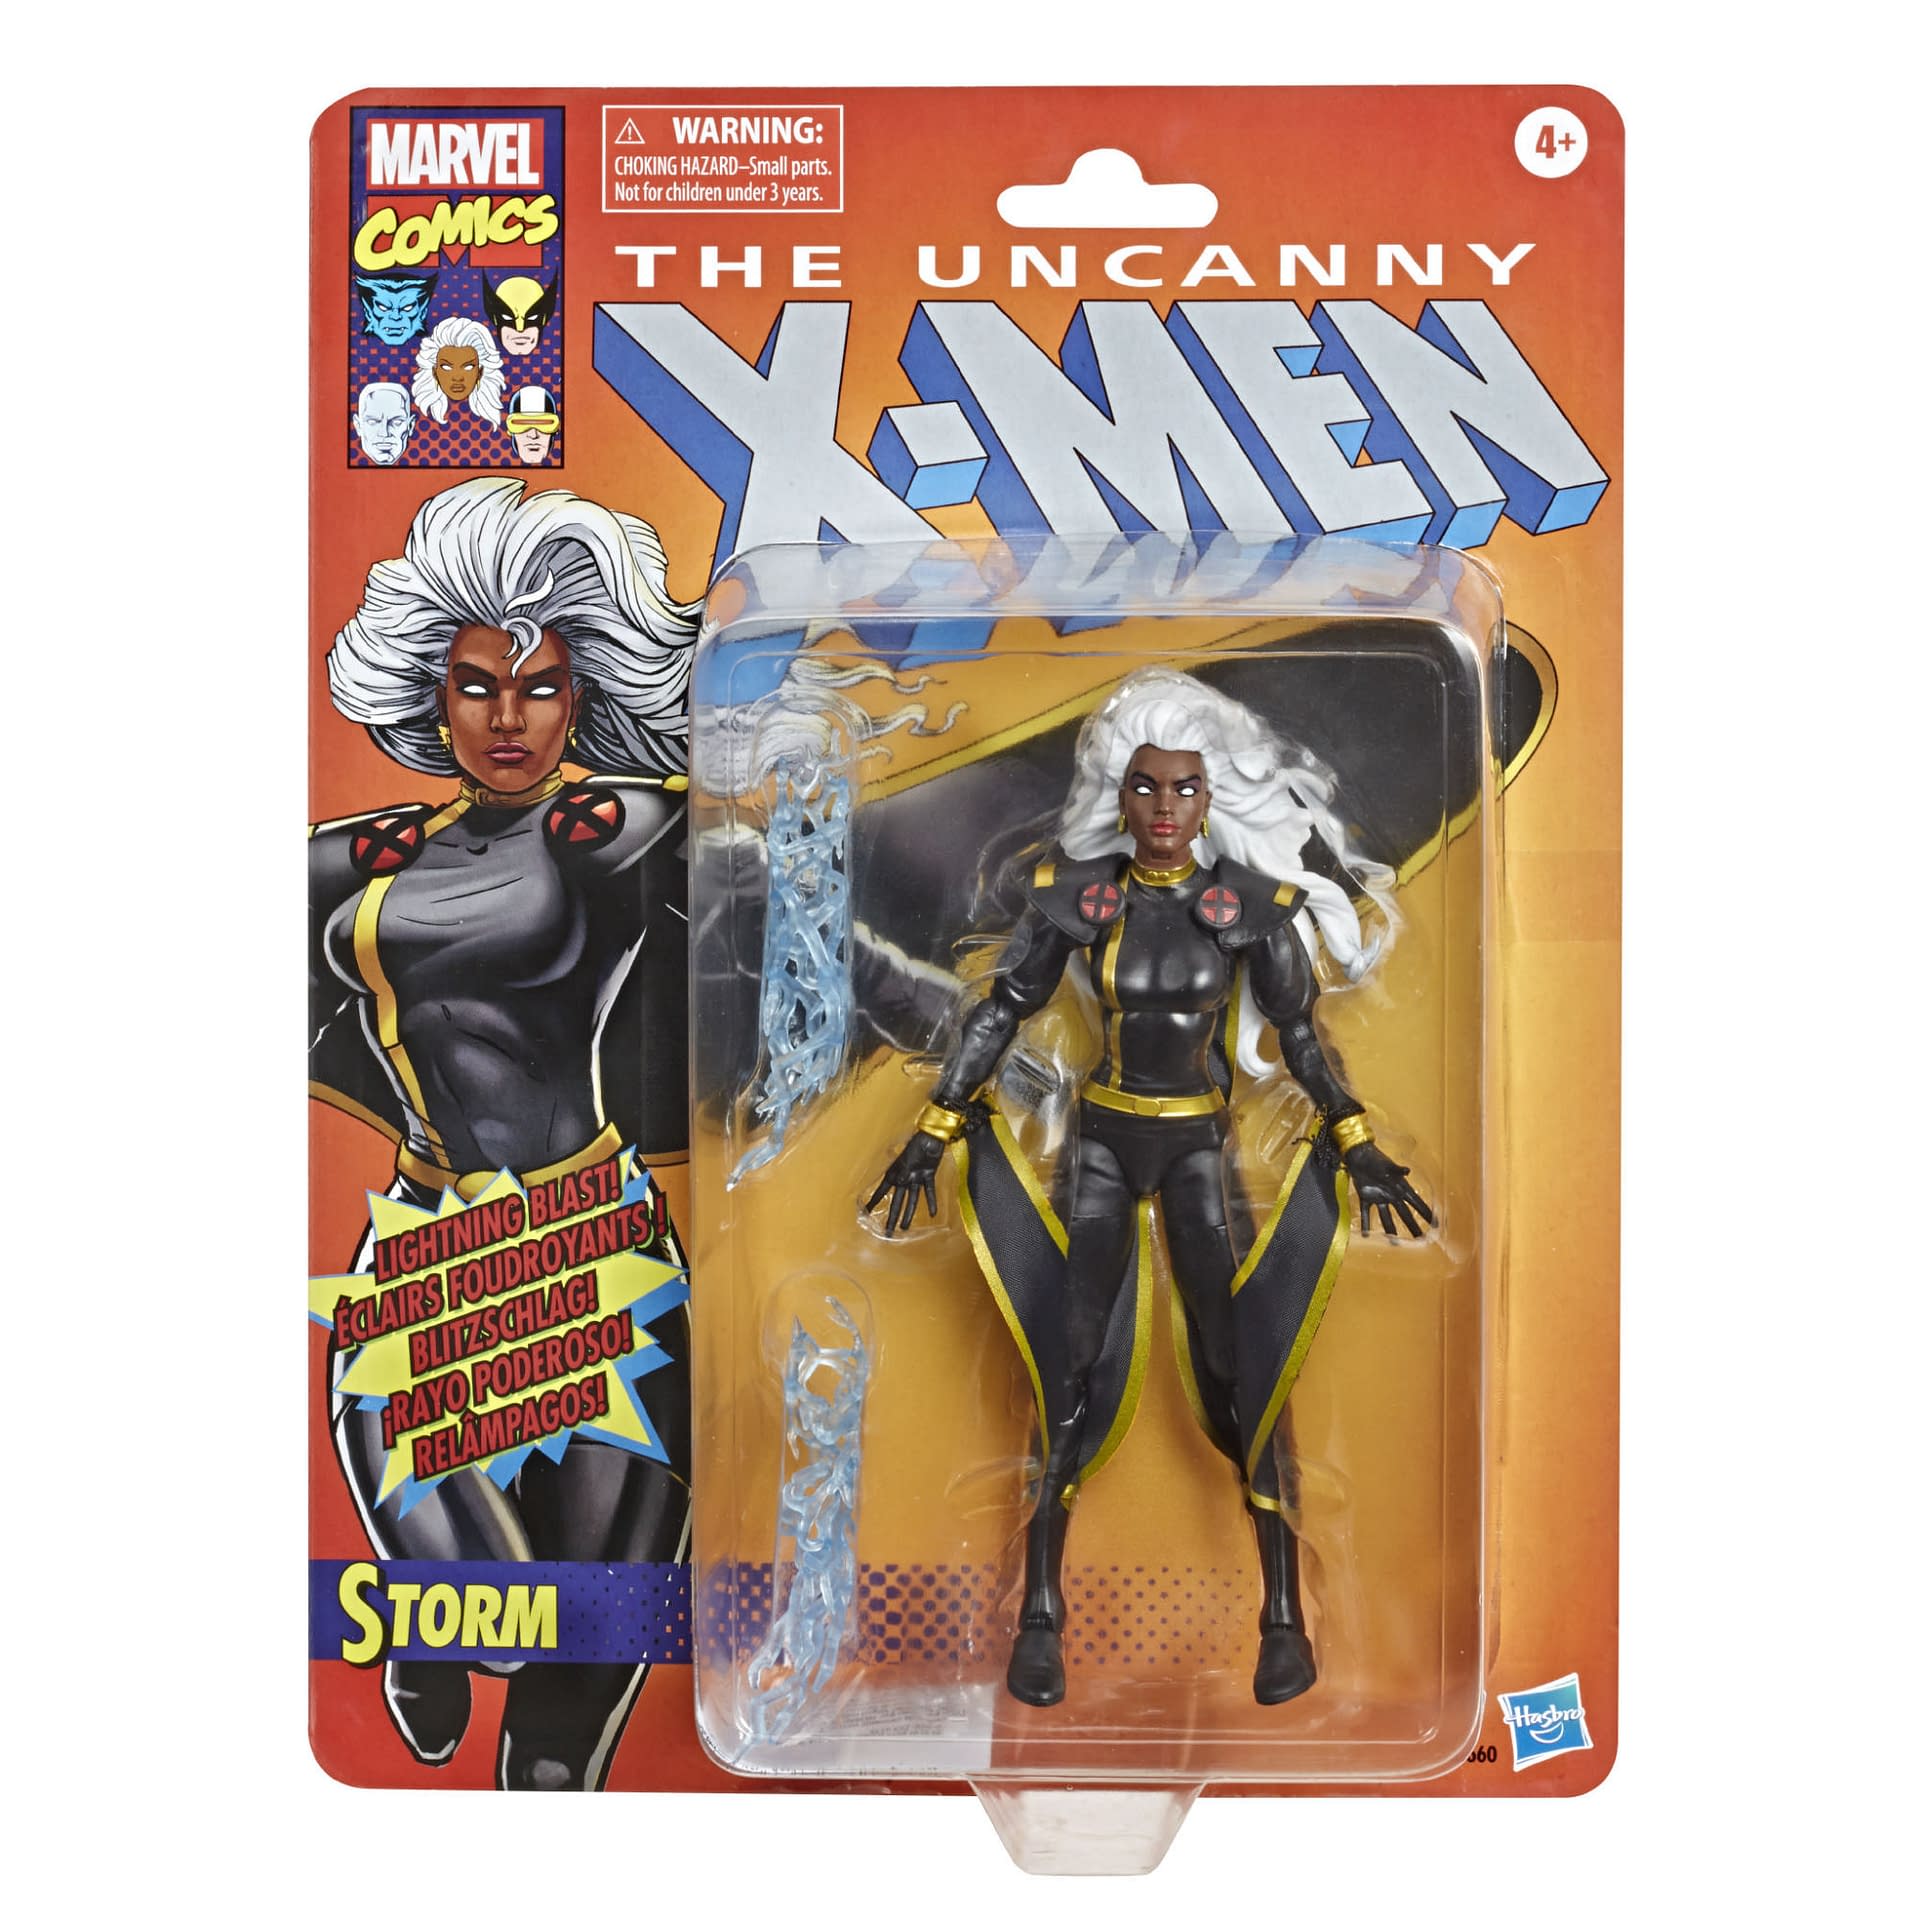 Marvel Legends Gets Cuckoo with New X-Men Figures